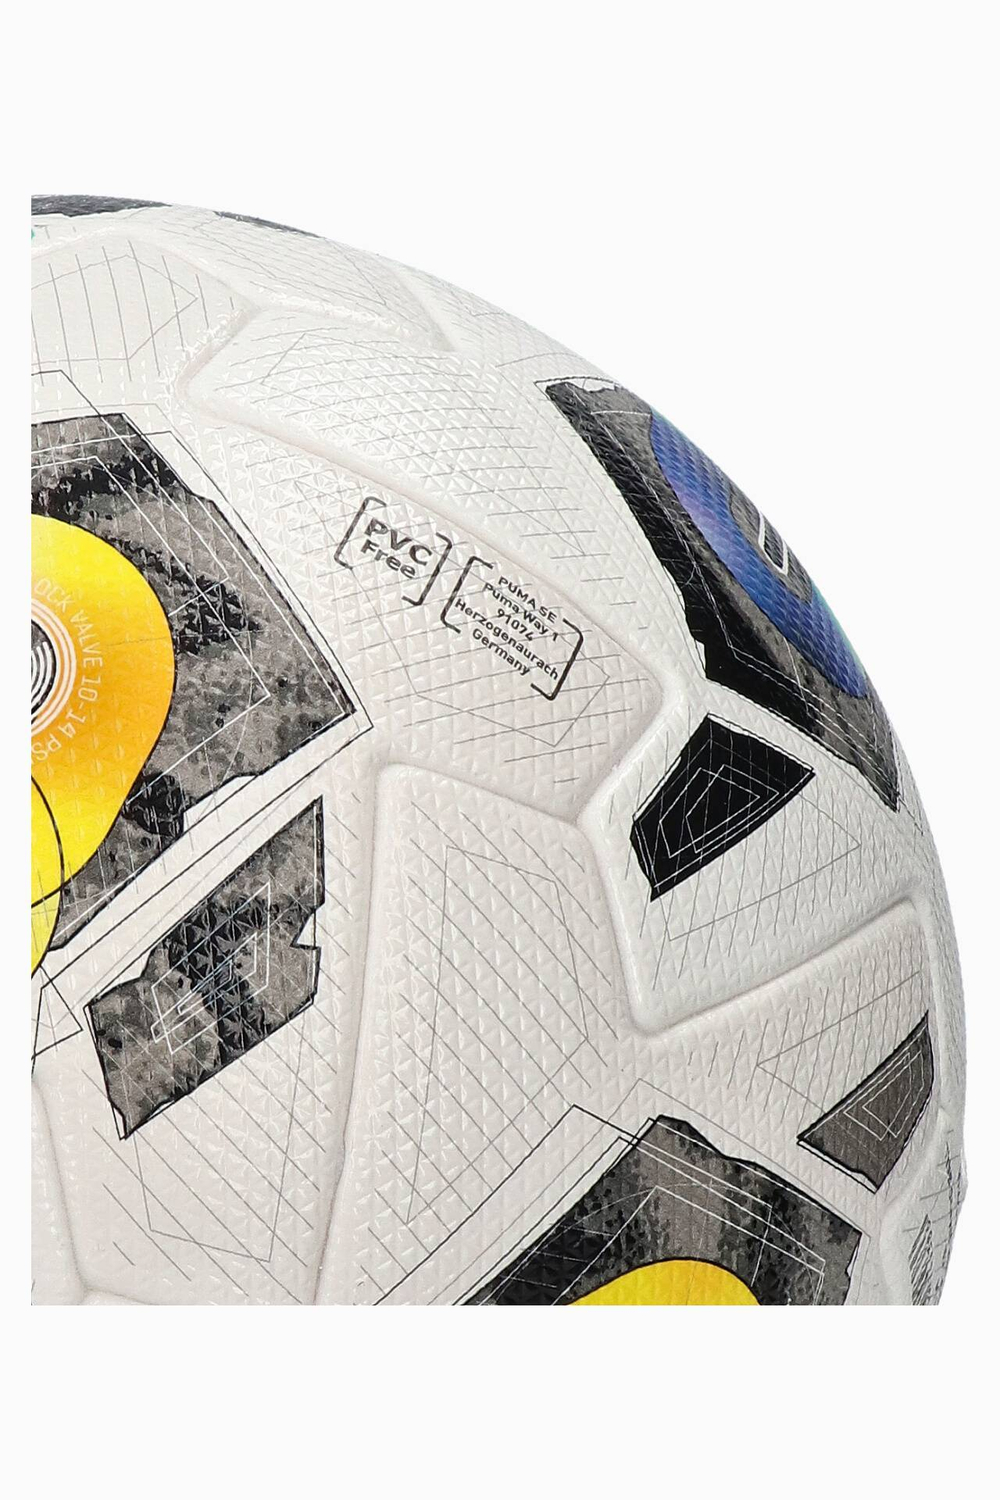 Футбольный мяч Puma Orbita 1 FIFA Quality Pro размер 5